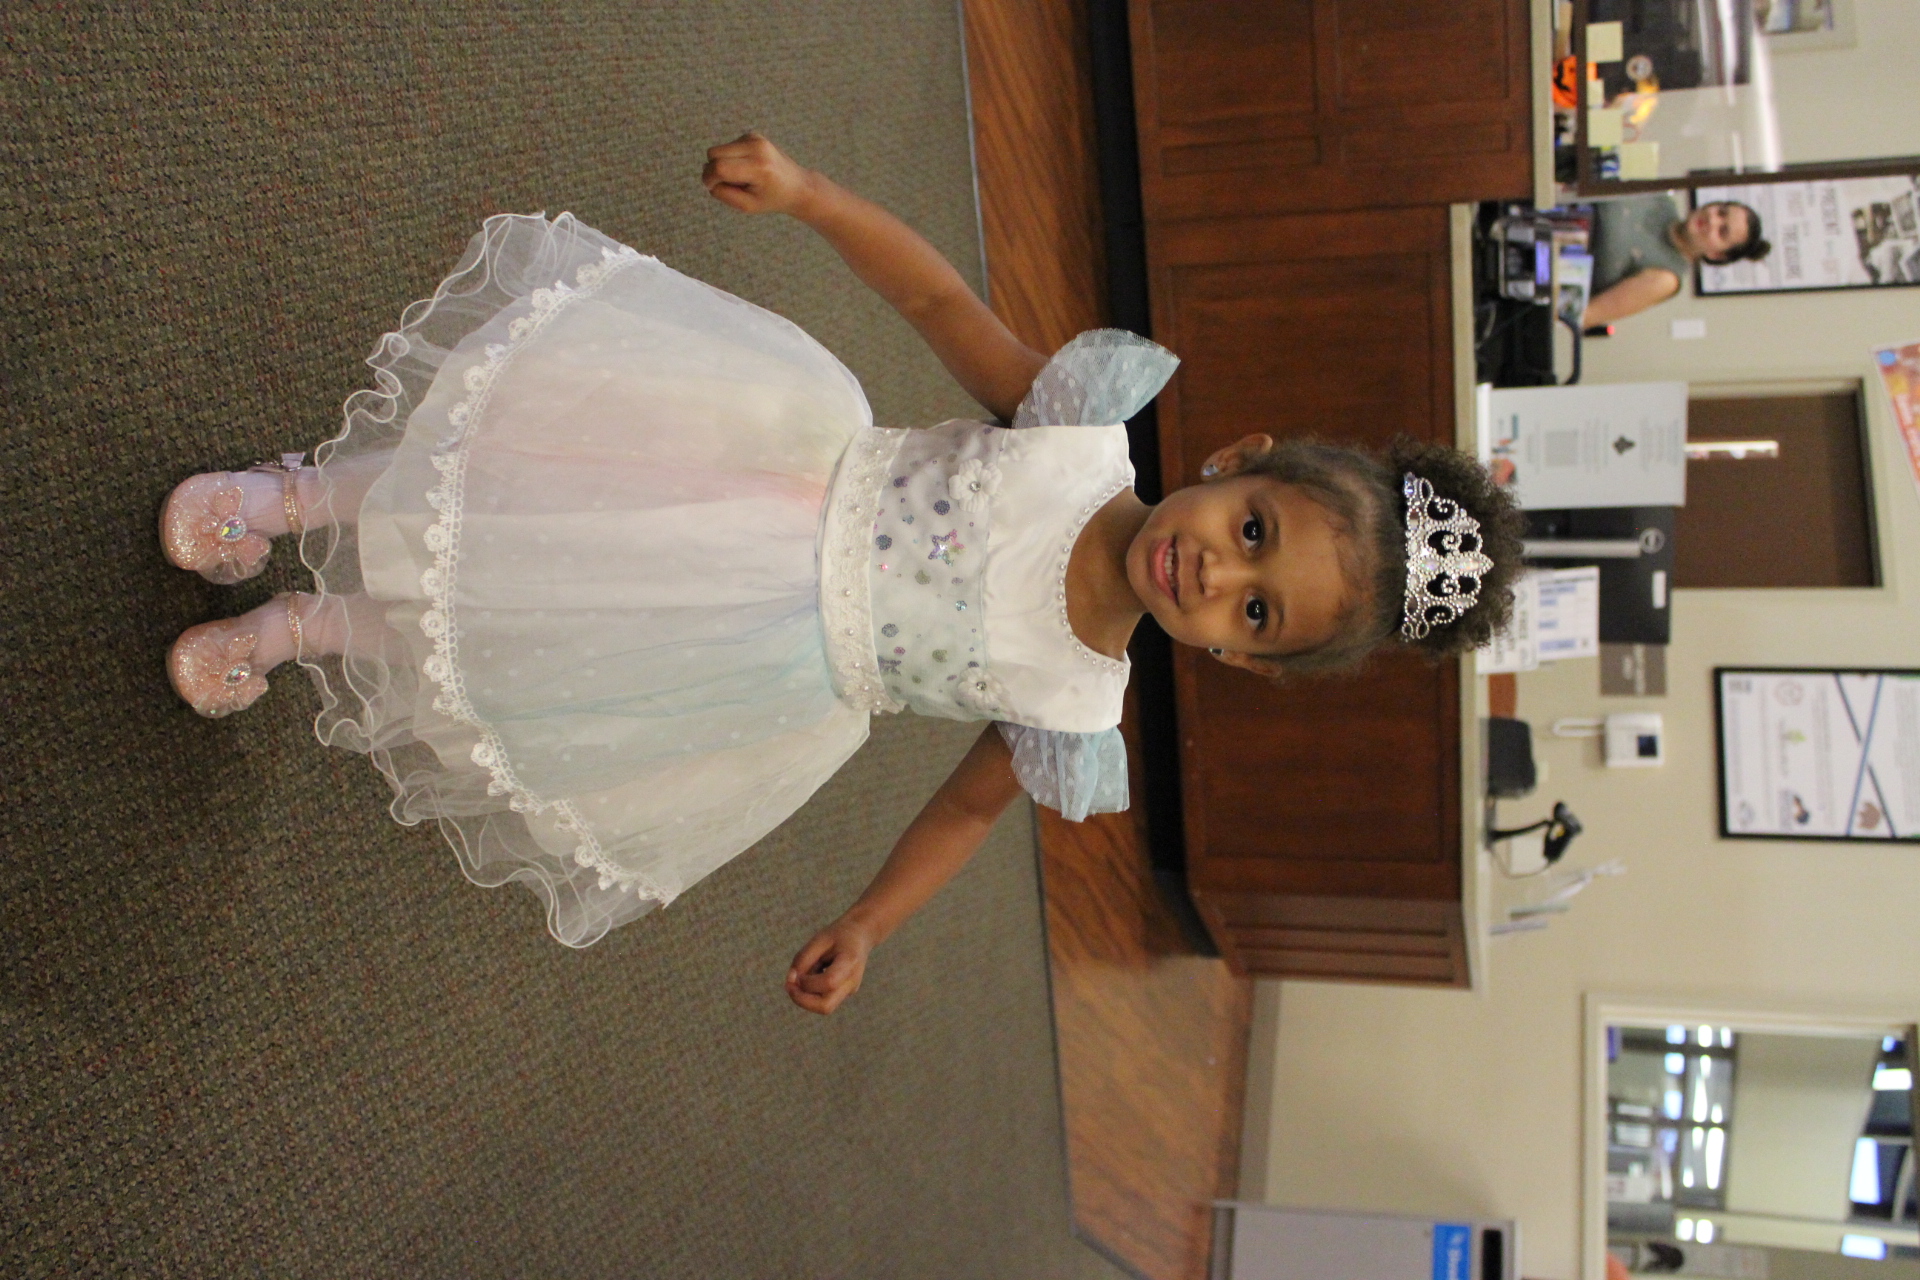 Child dressed as princess